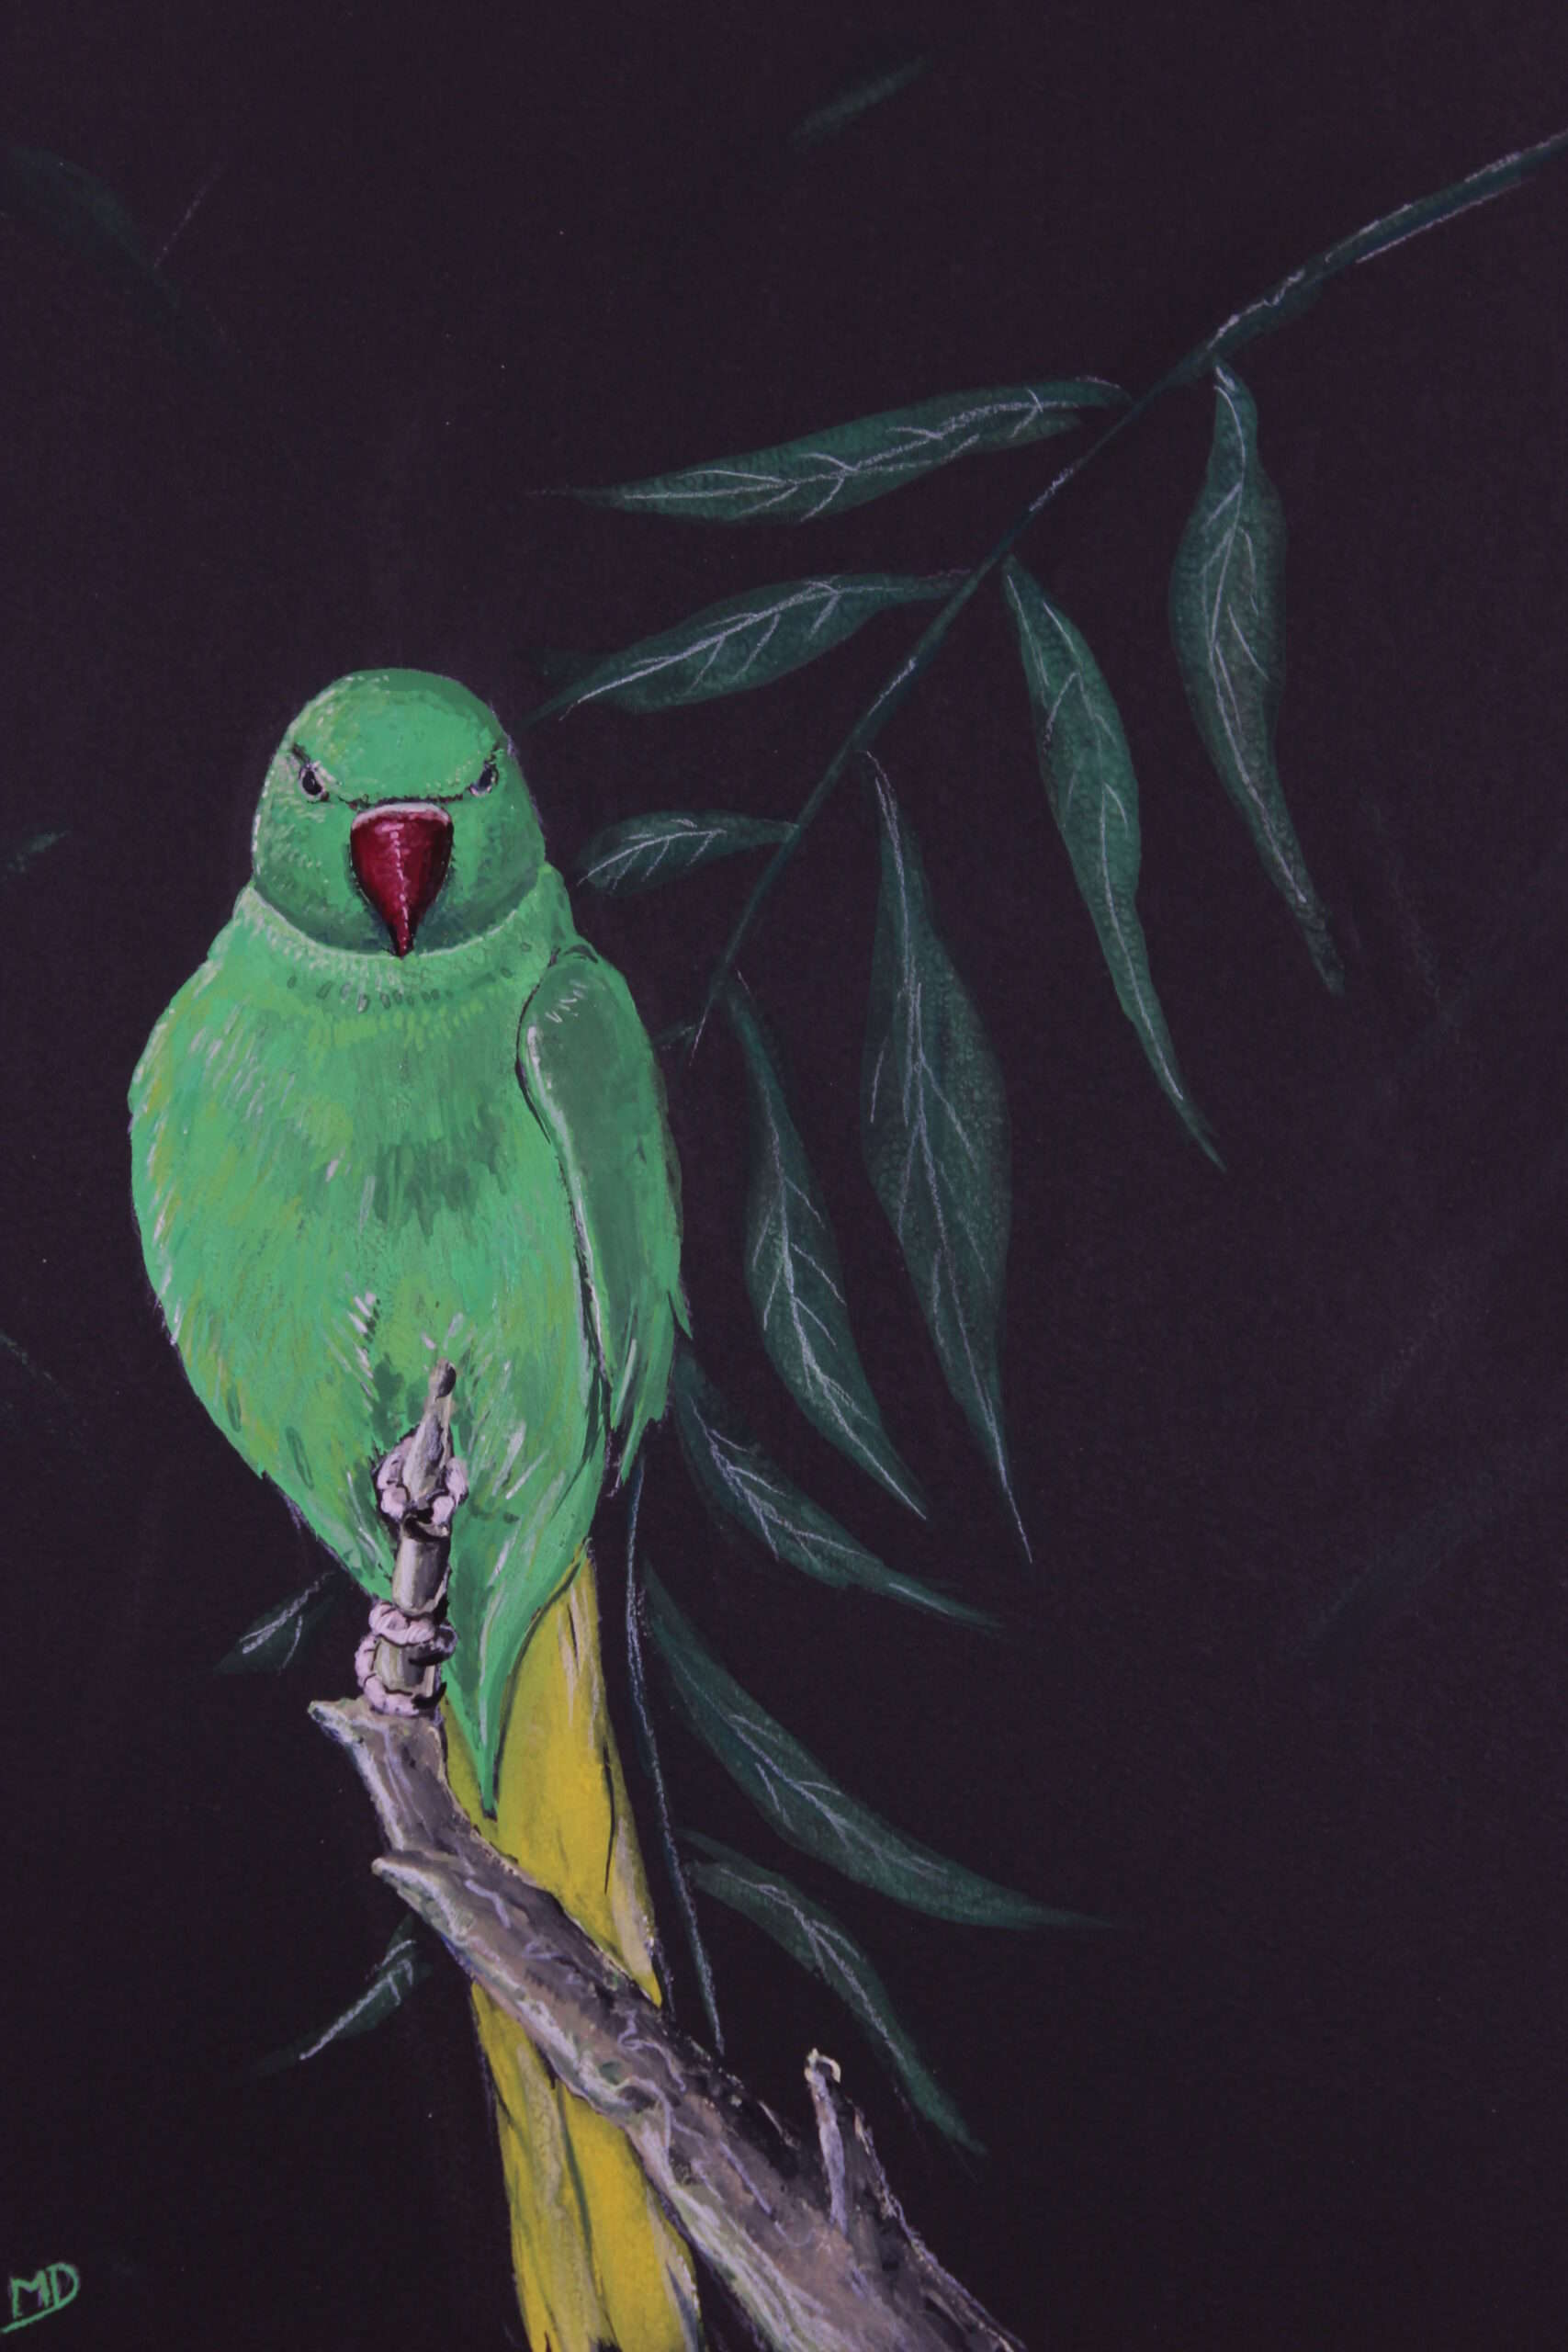 œuvre d'art, animalier, gouache sur papier A4, david morel artiste, perruche verte sur une branche sur fond noir